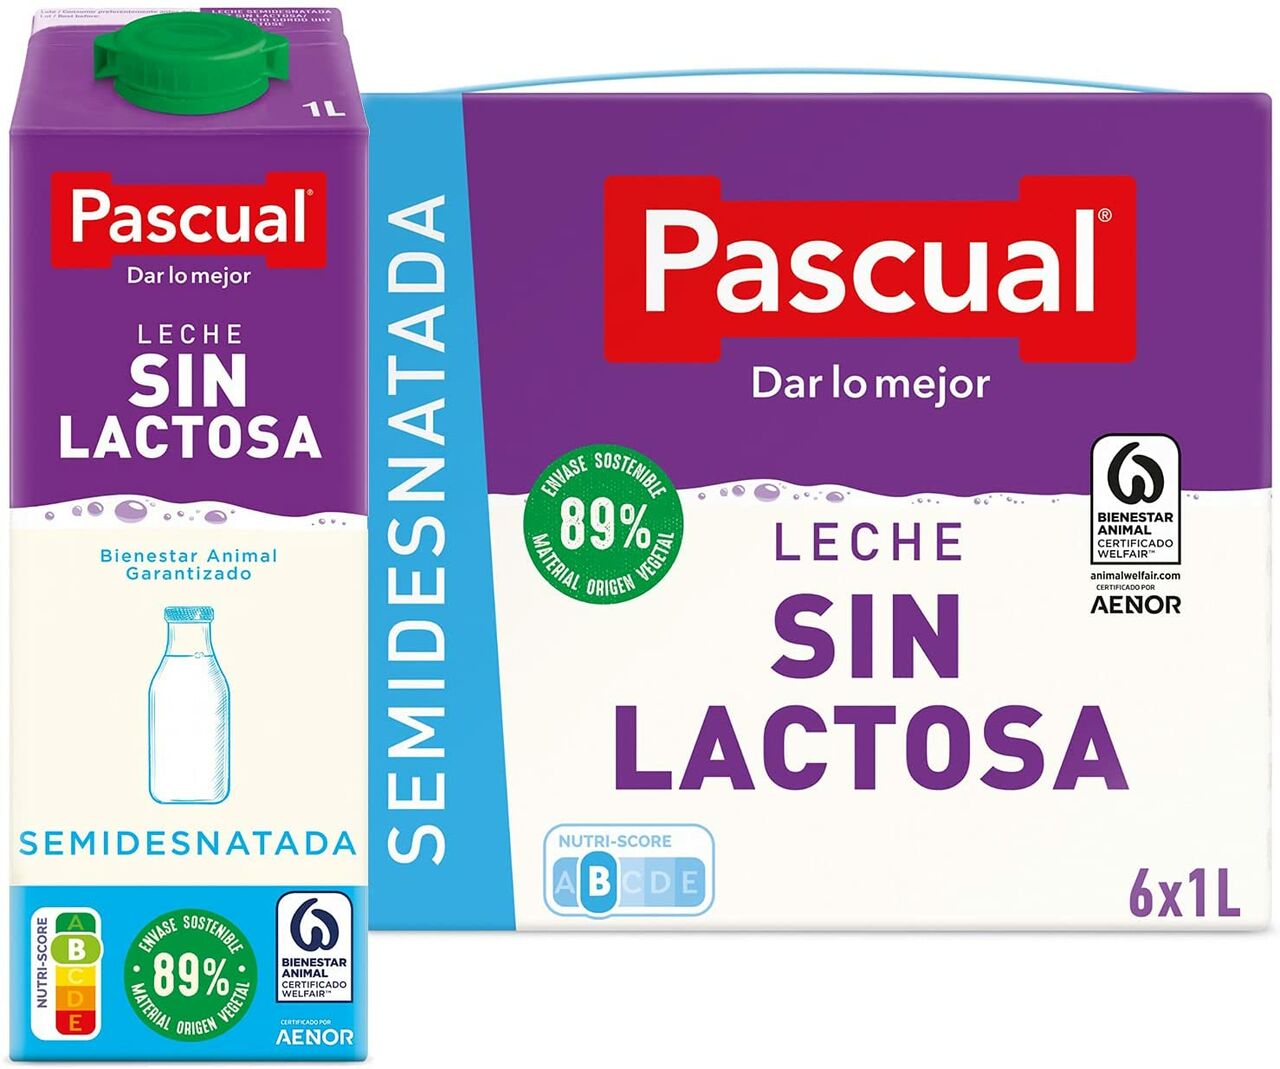 Leche sin lactosa entera - Categorías - Alcampo supermercado online